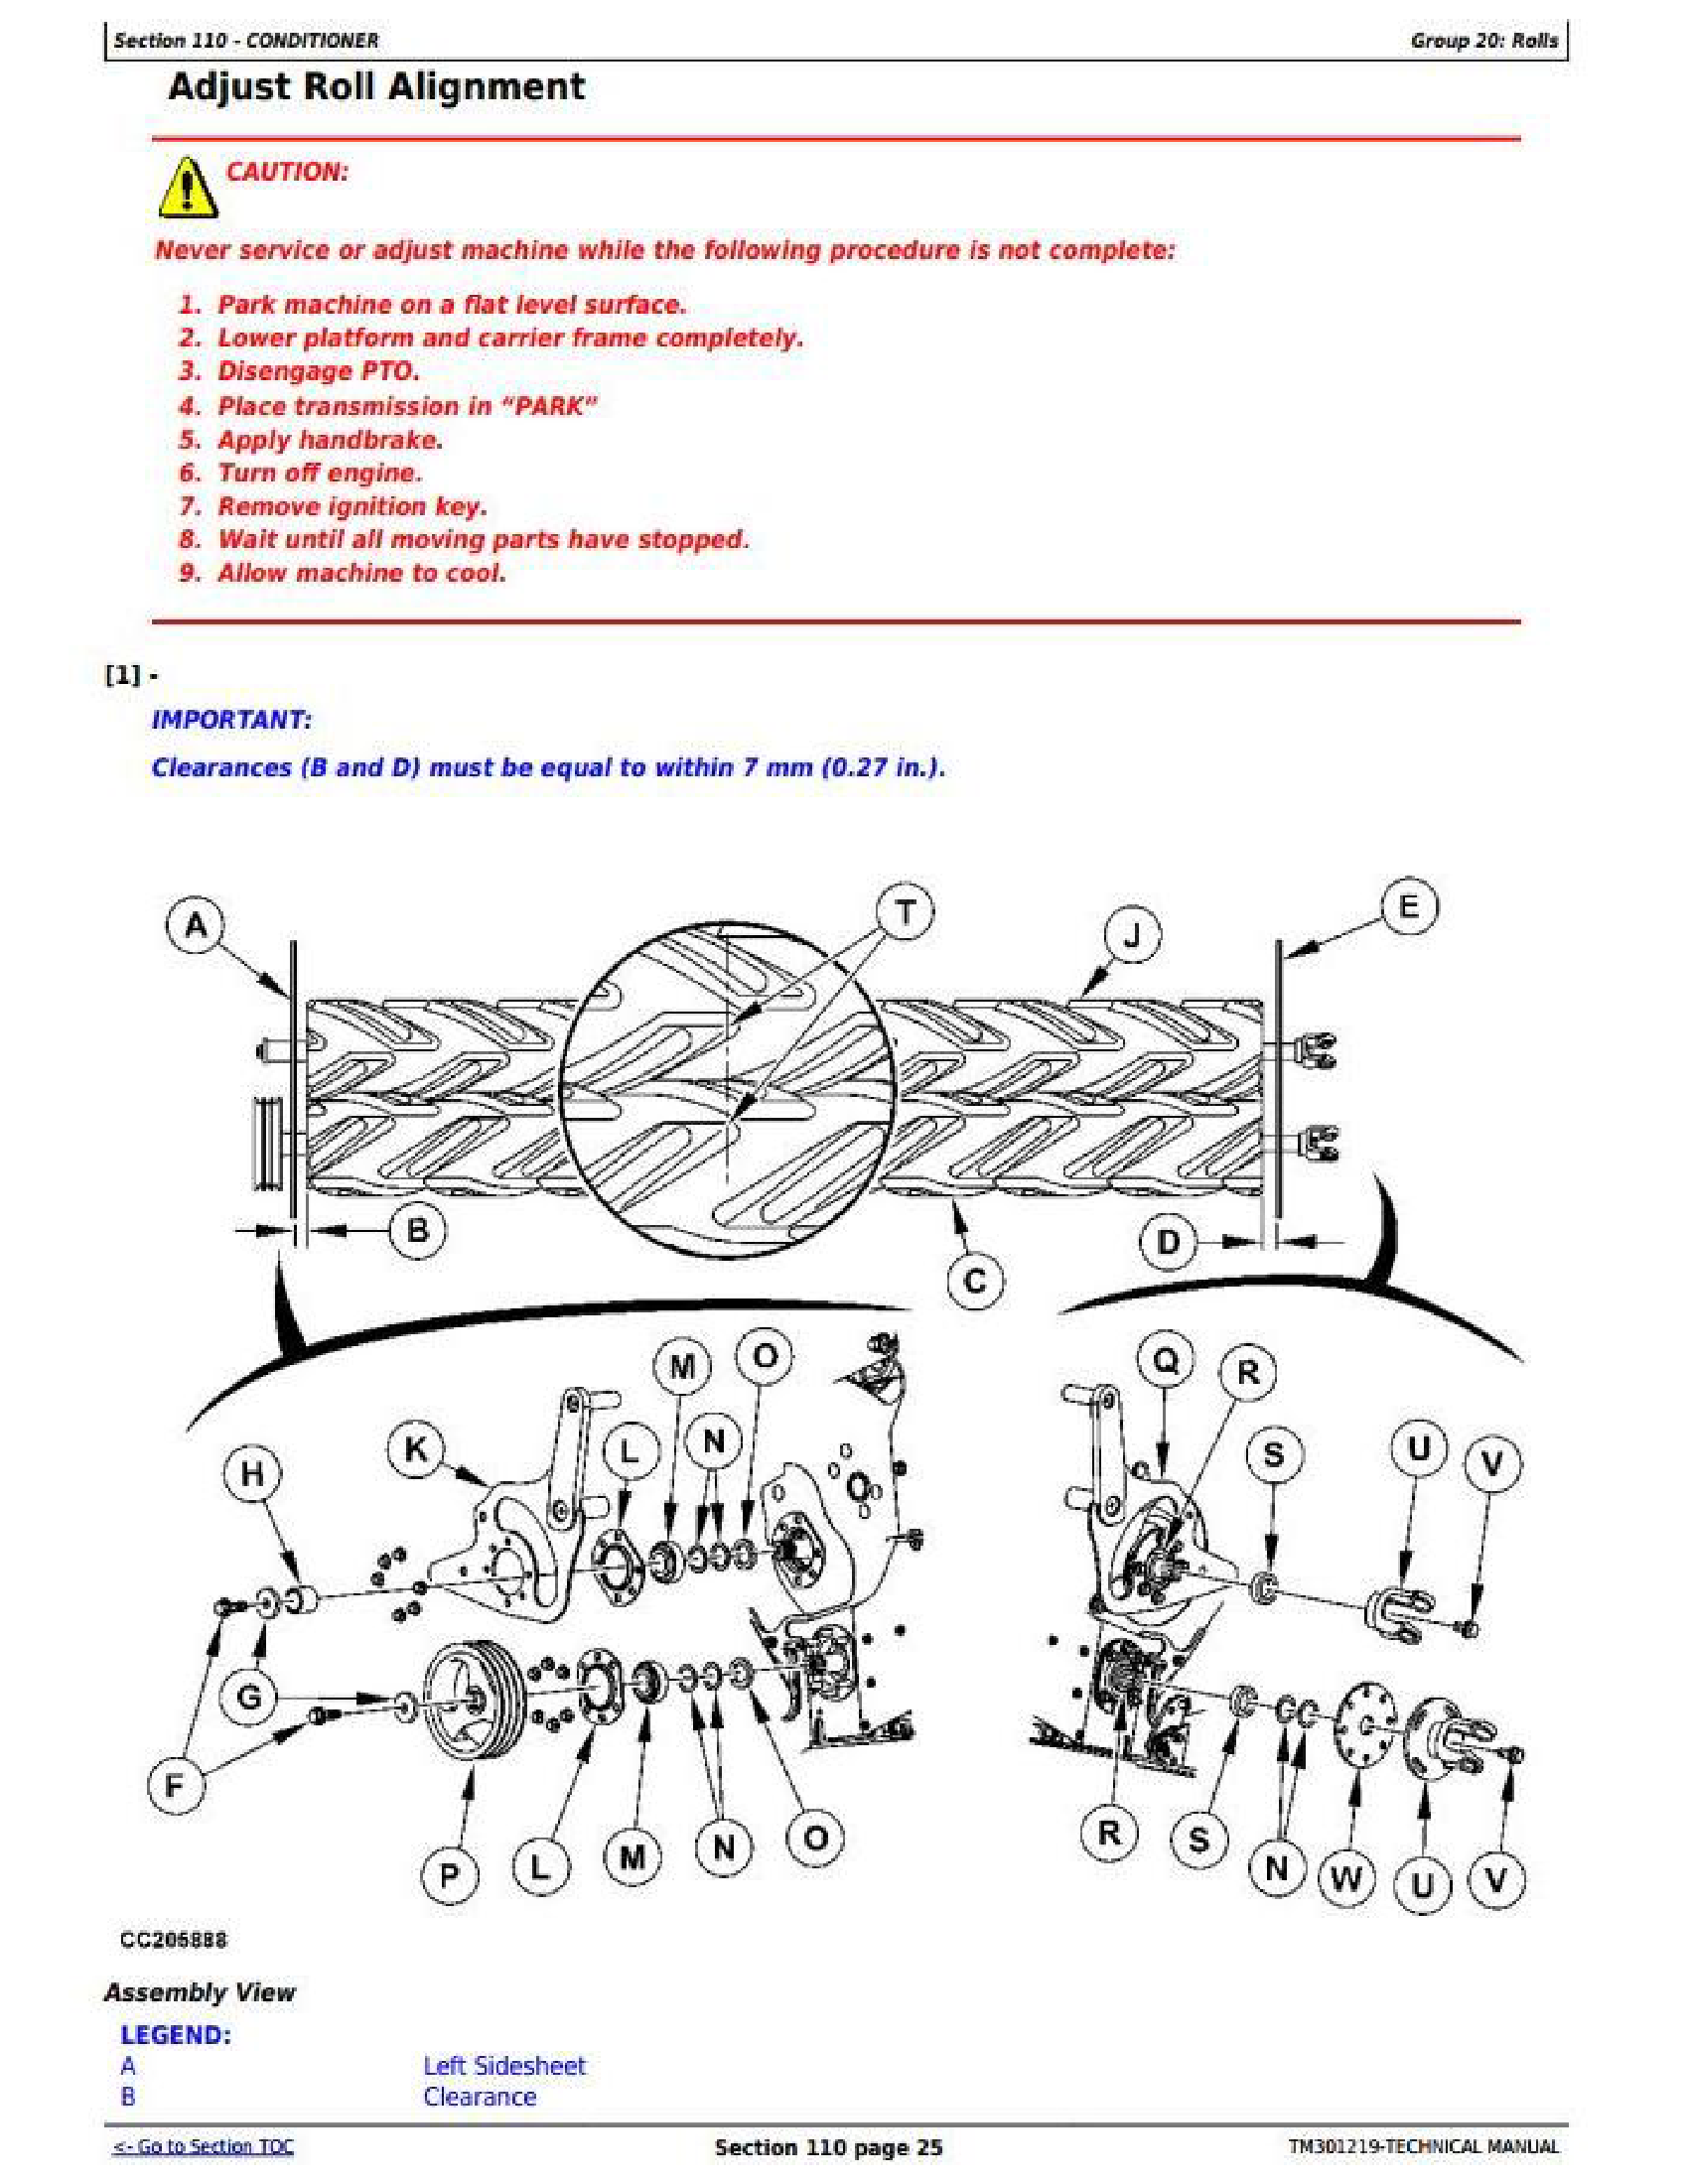 John Deere 620001- manual pdf